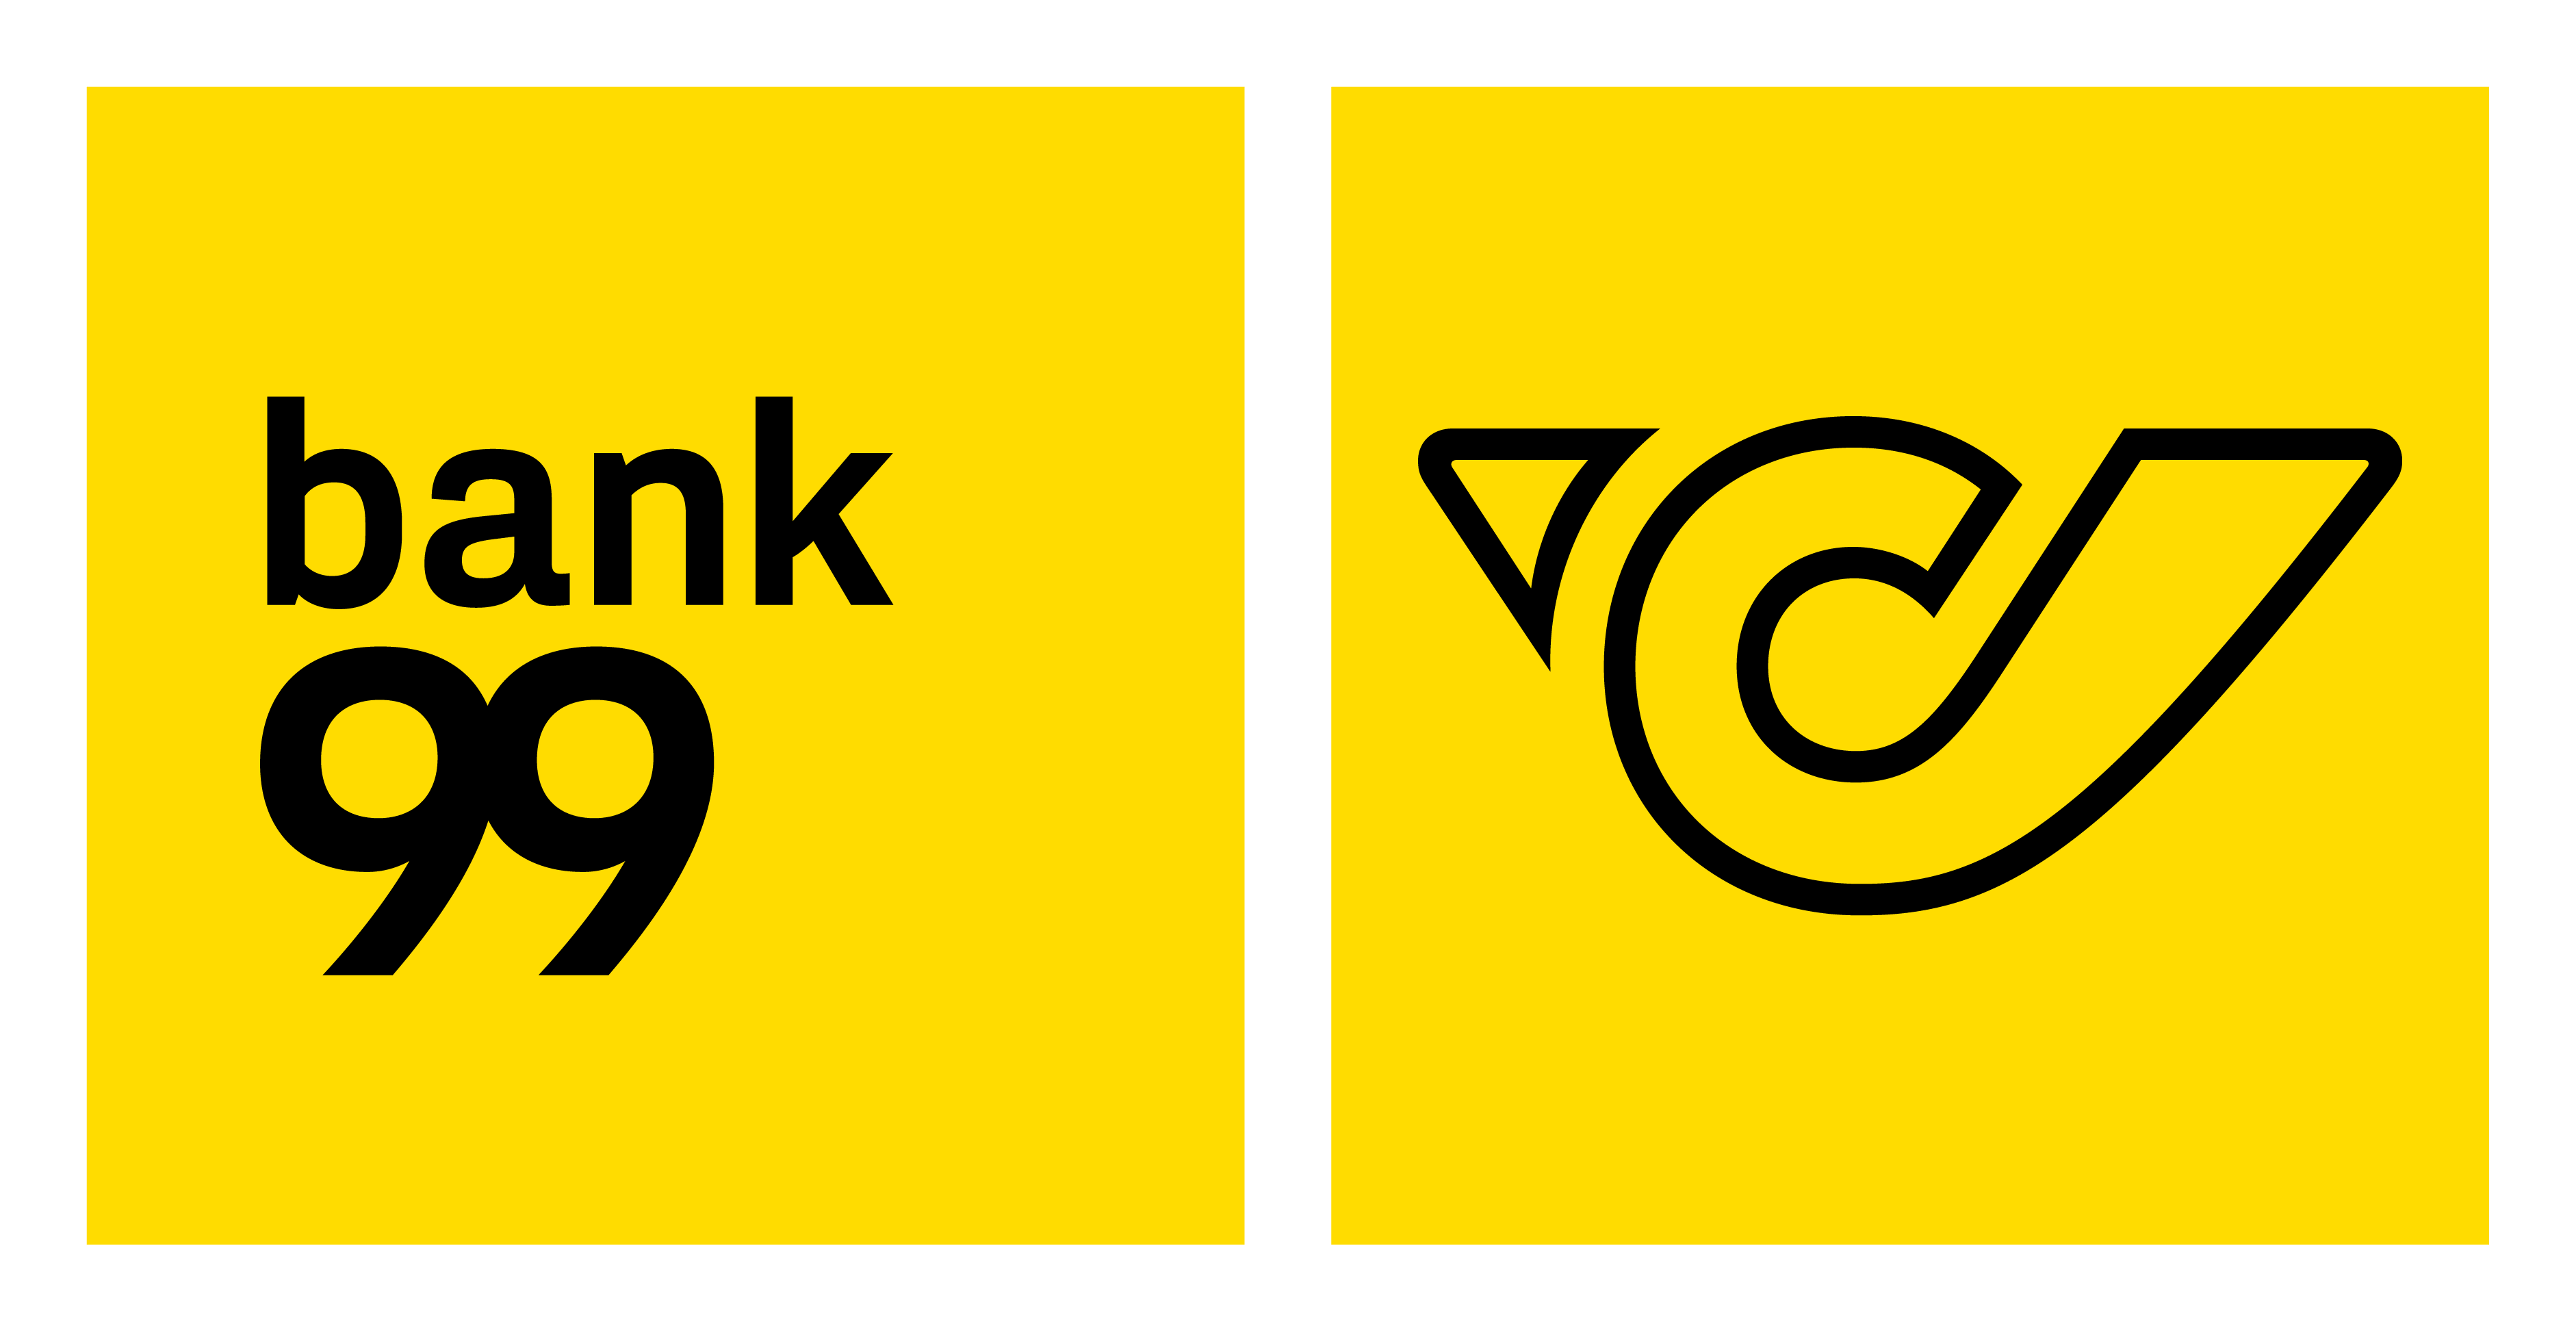 bank99-logo 